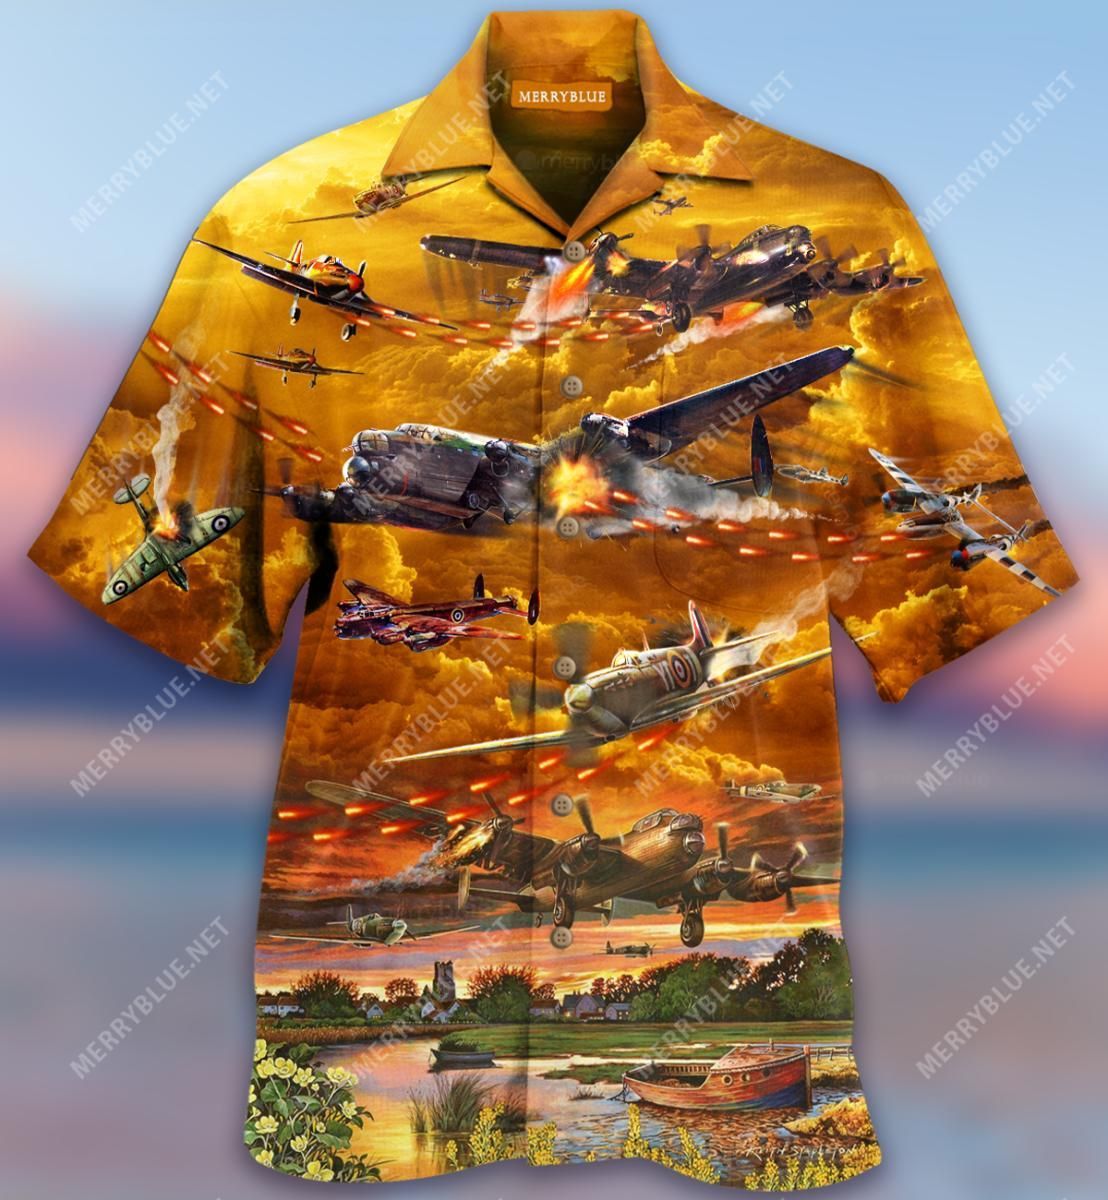 Flying Isn'T Dangerous Crashing Is What'S Dangerous Aloha Hawaiian Shirt Colorful Short Sleeve Summer Beach Casual Shirt For Men And Women